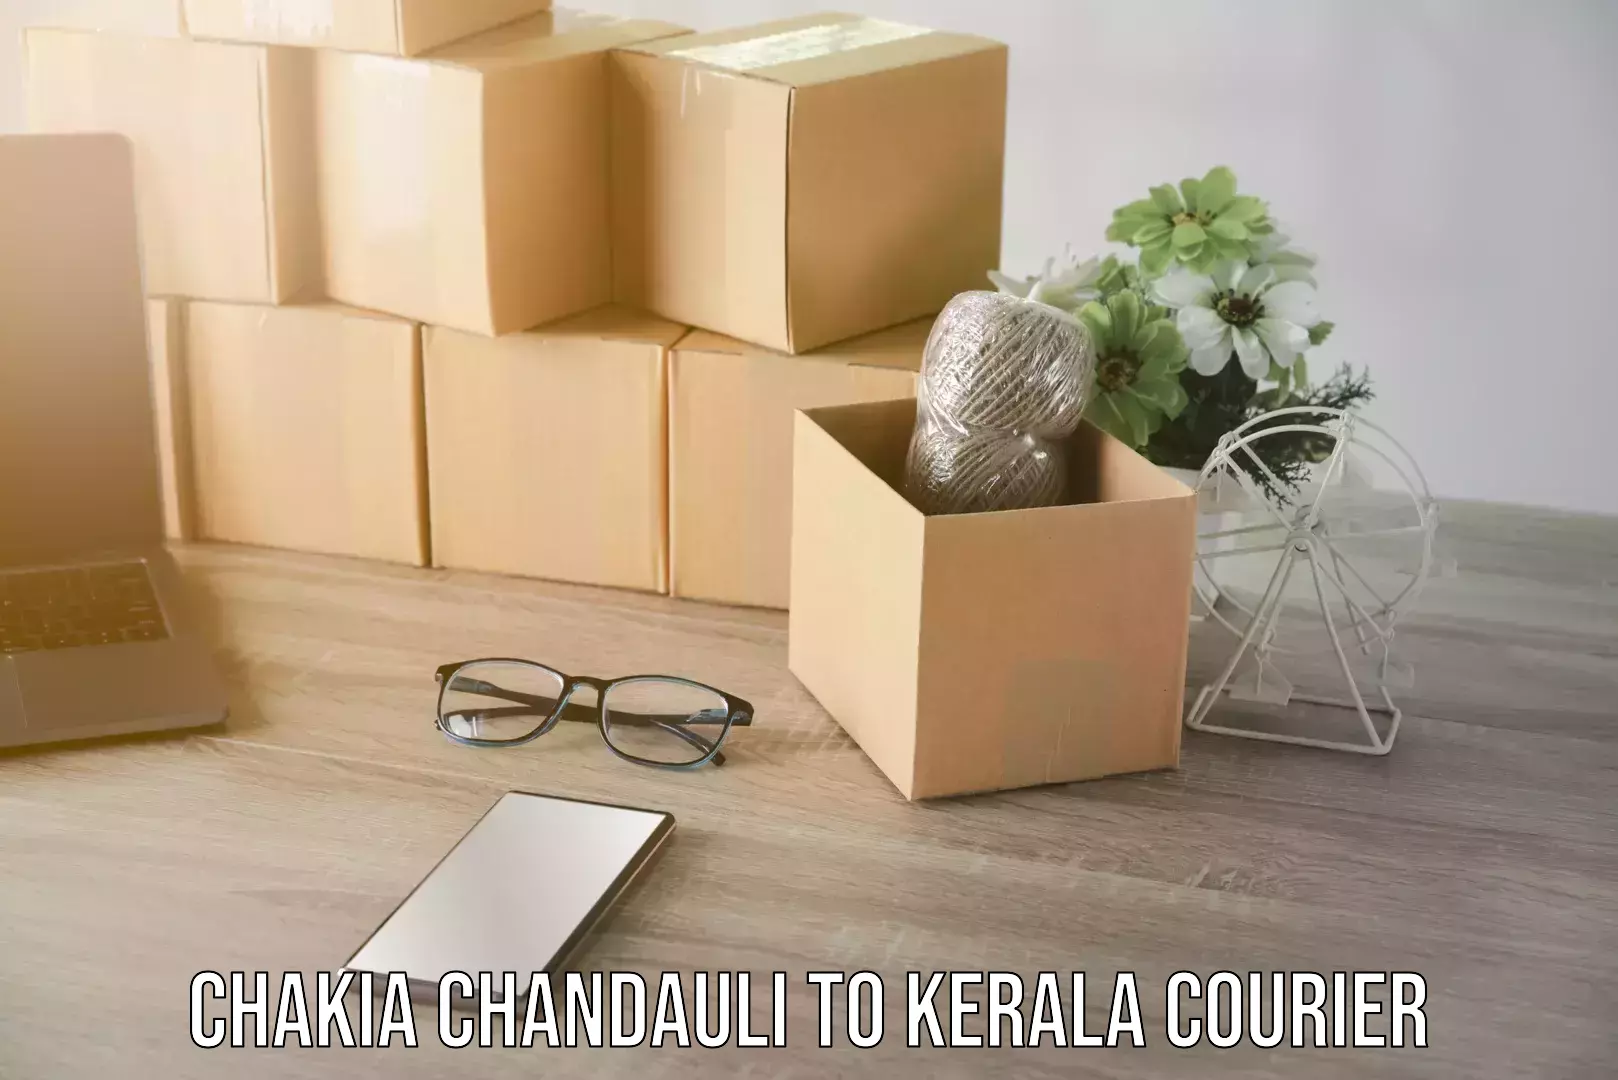 Logistics service provider Chakia Chandauli to Kerala